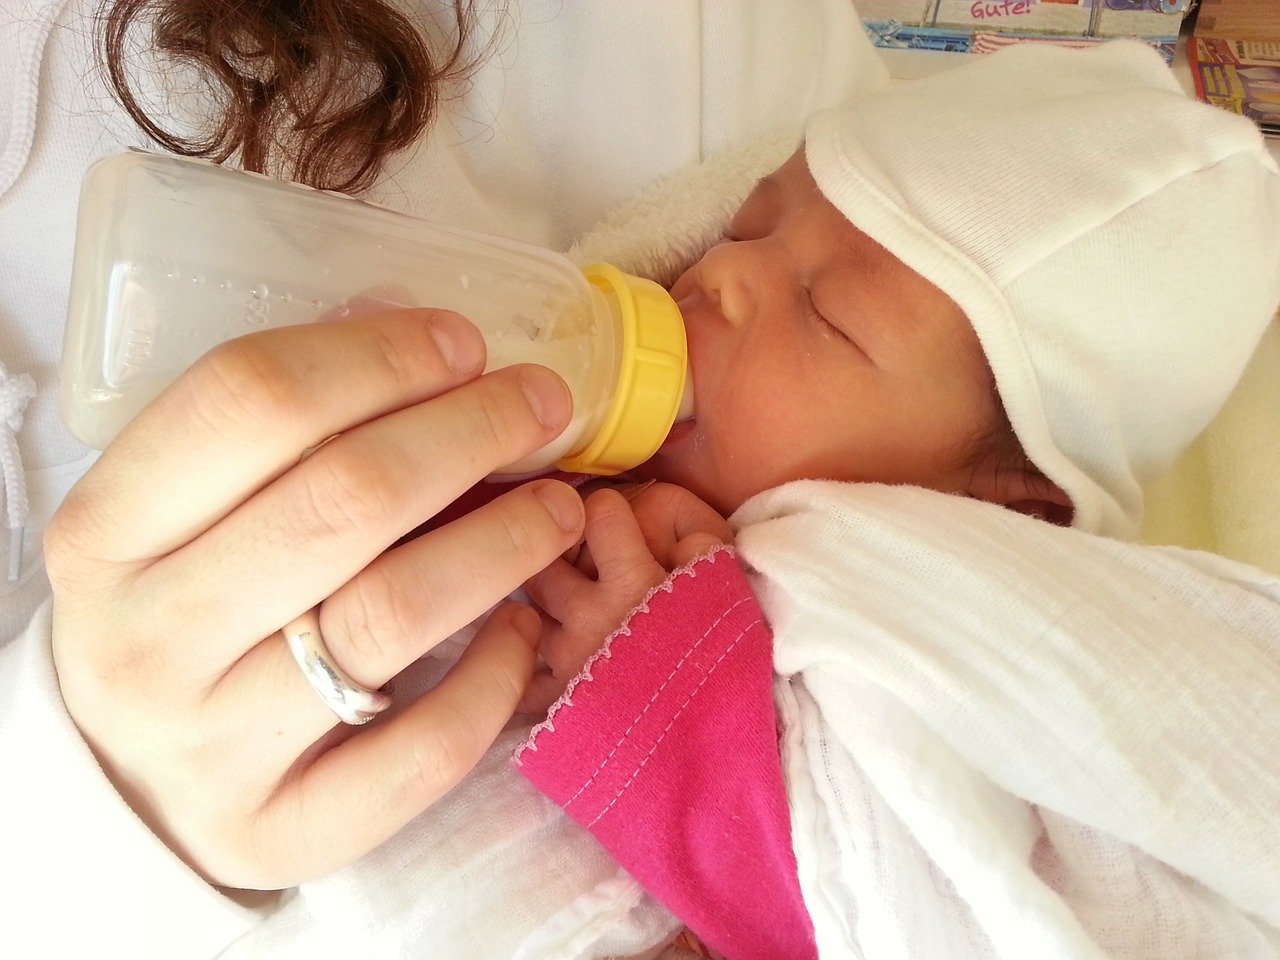 bottle feeding a newborn baby